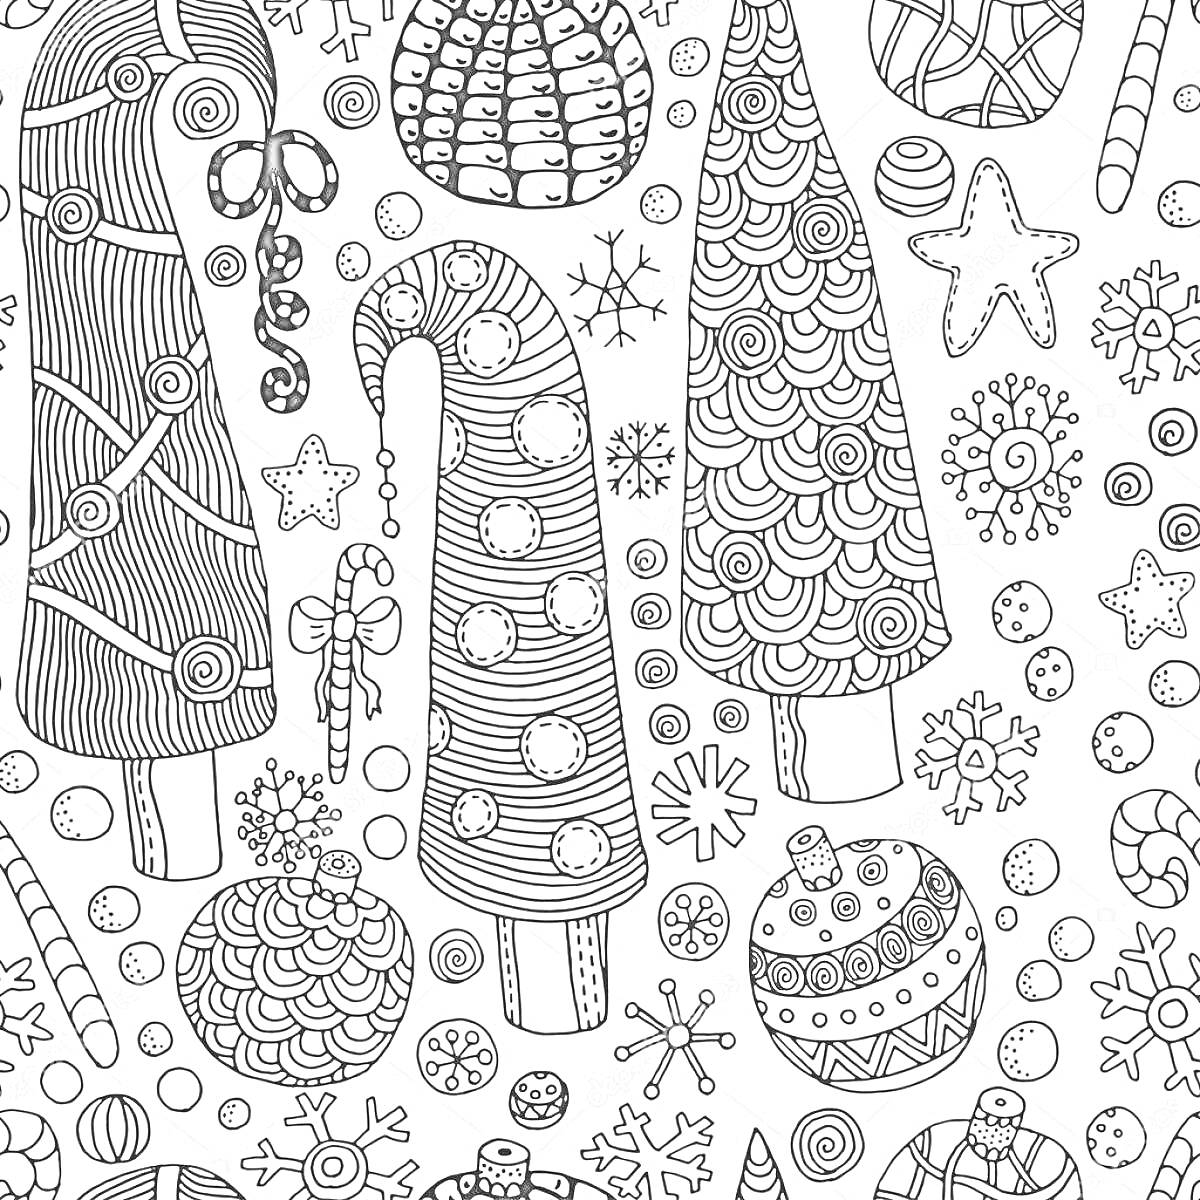 Раскраска Елки, шапки Санты, снежинки, конфеты, звезды, снежные шары